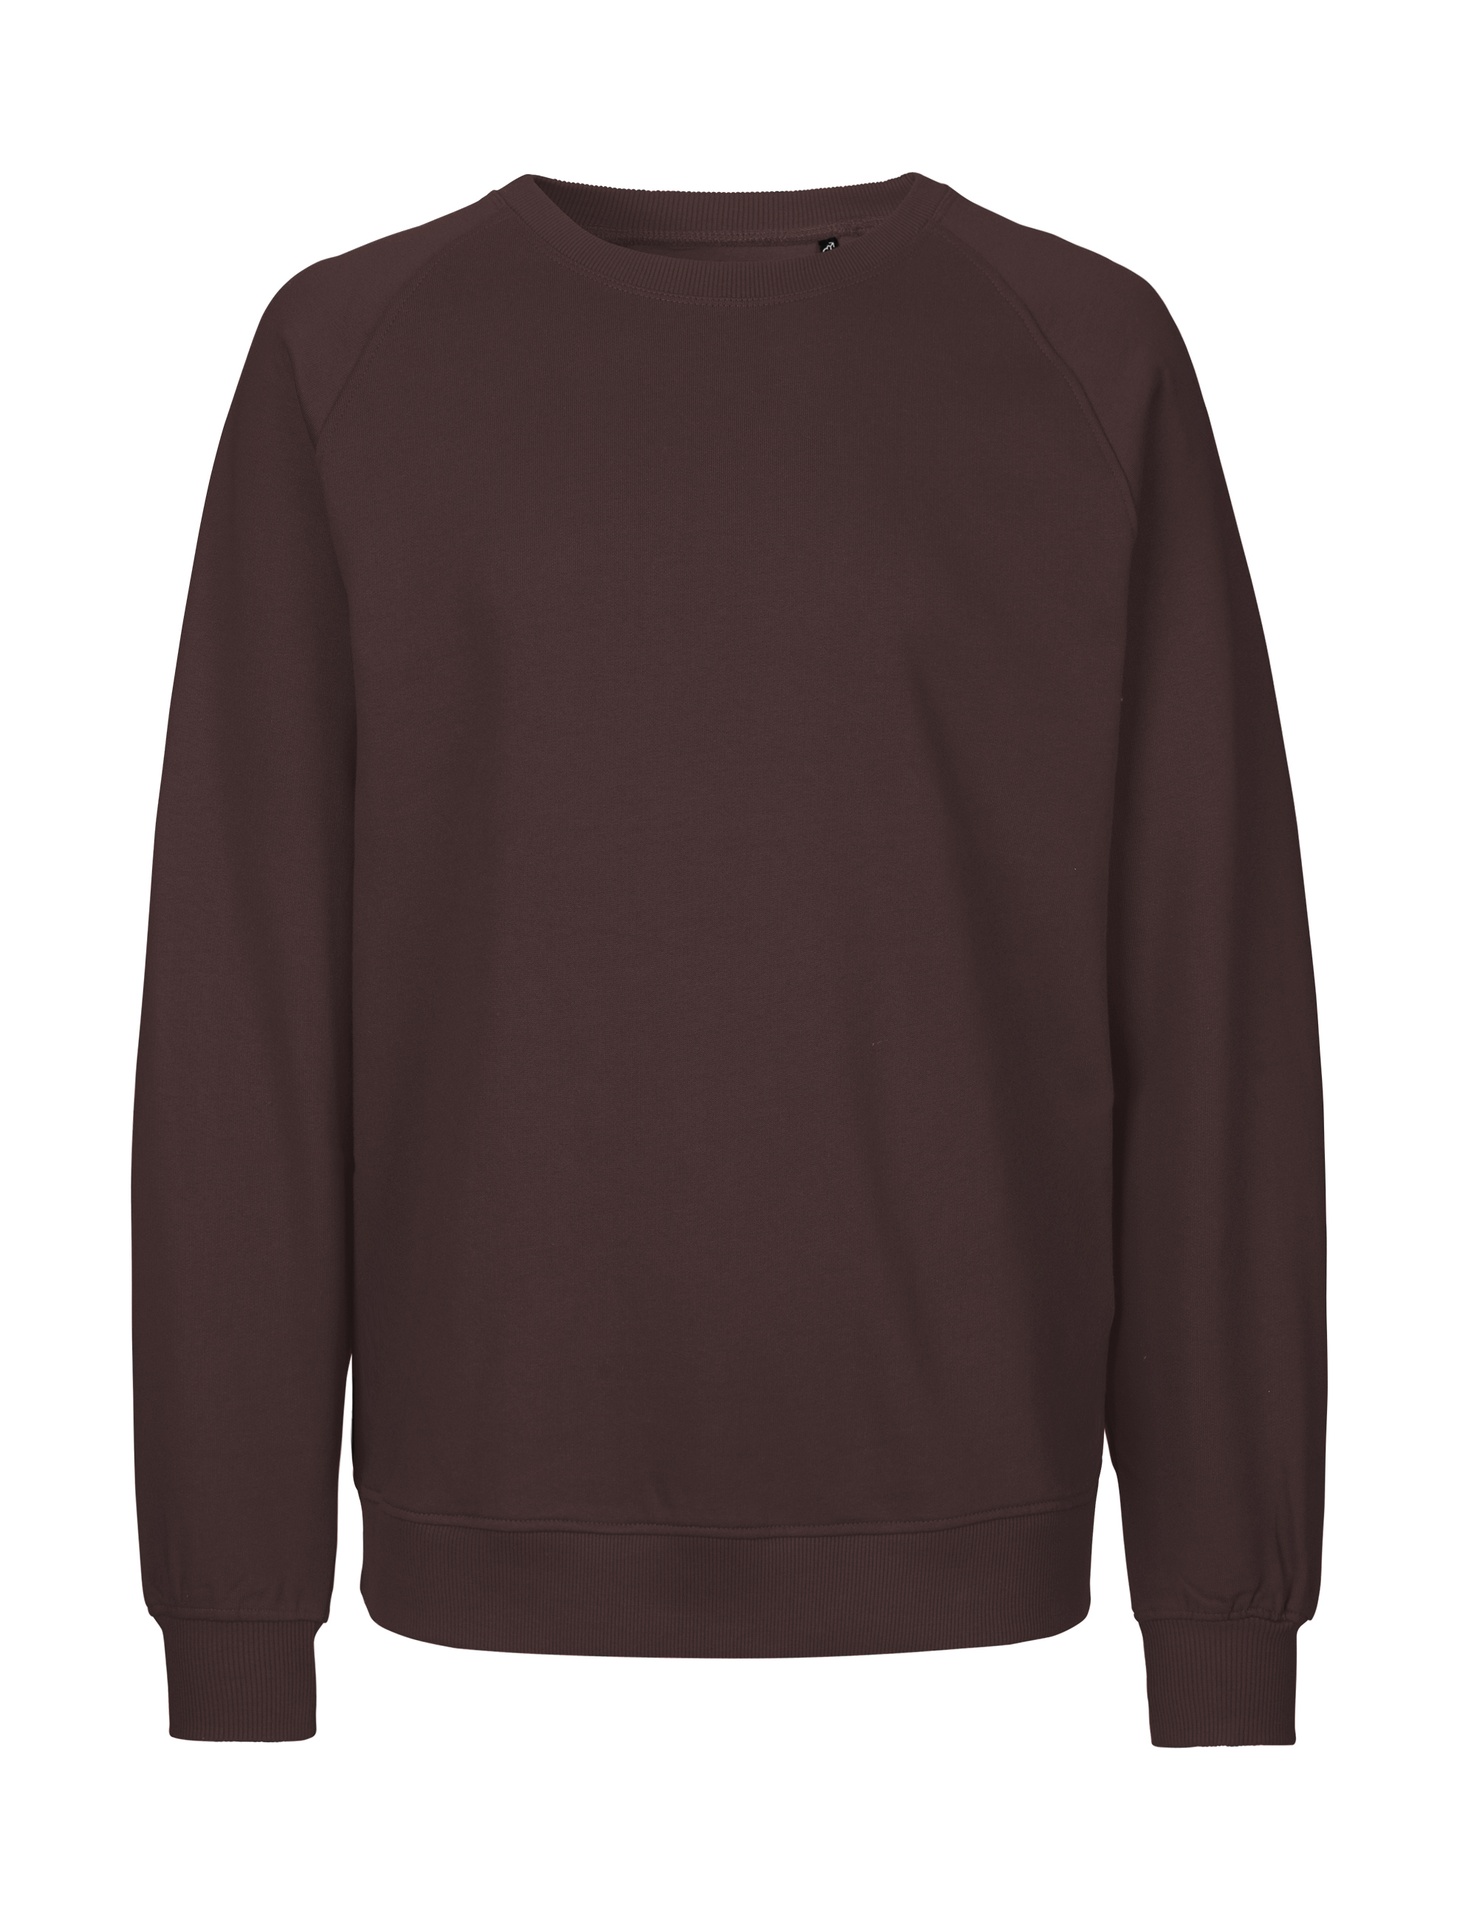 [PR/02807] Unisex Sweatshirt (Brown 37, M)